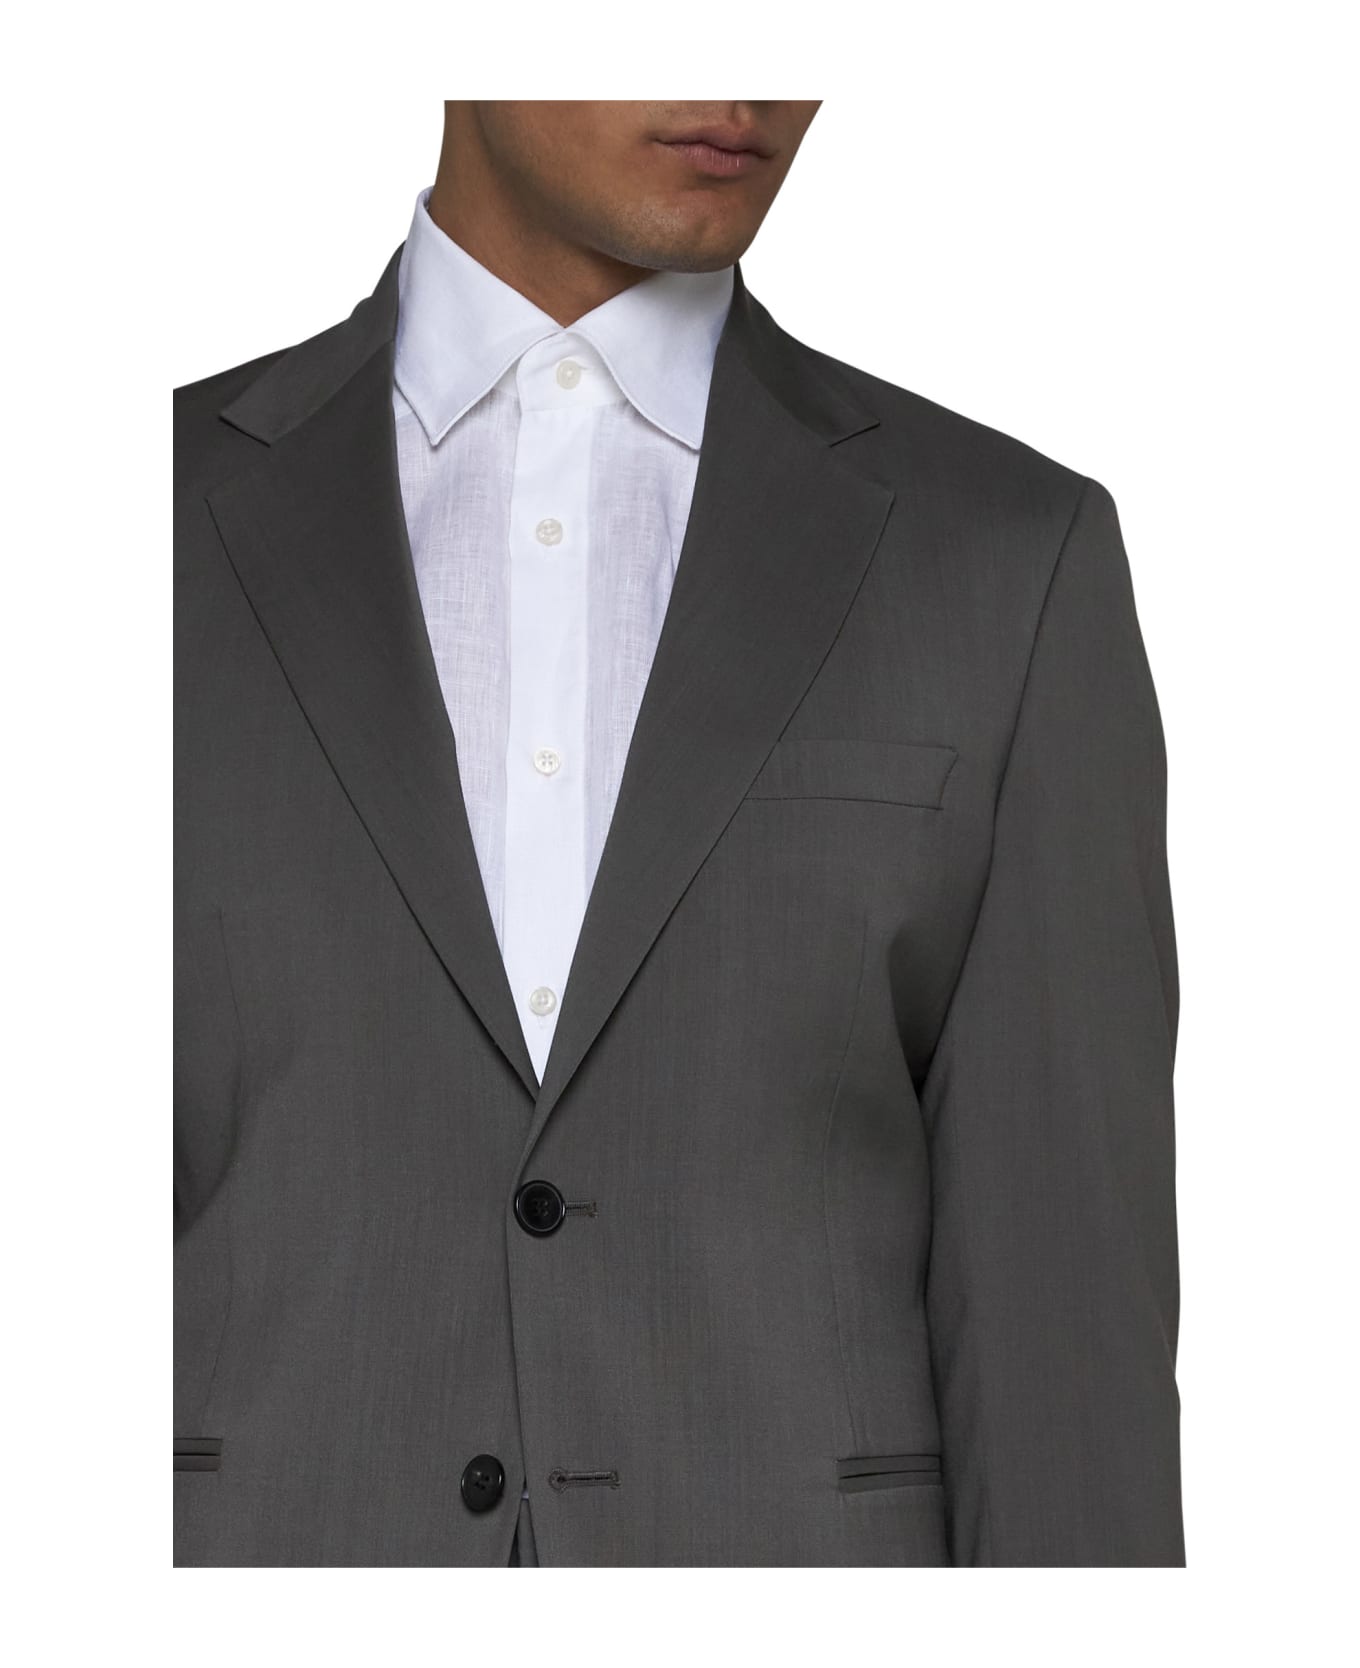 Low Brand Suit - Bracco スーツ